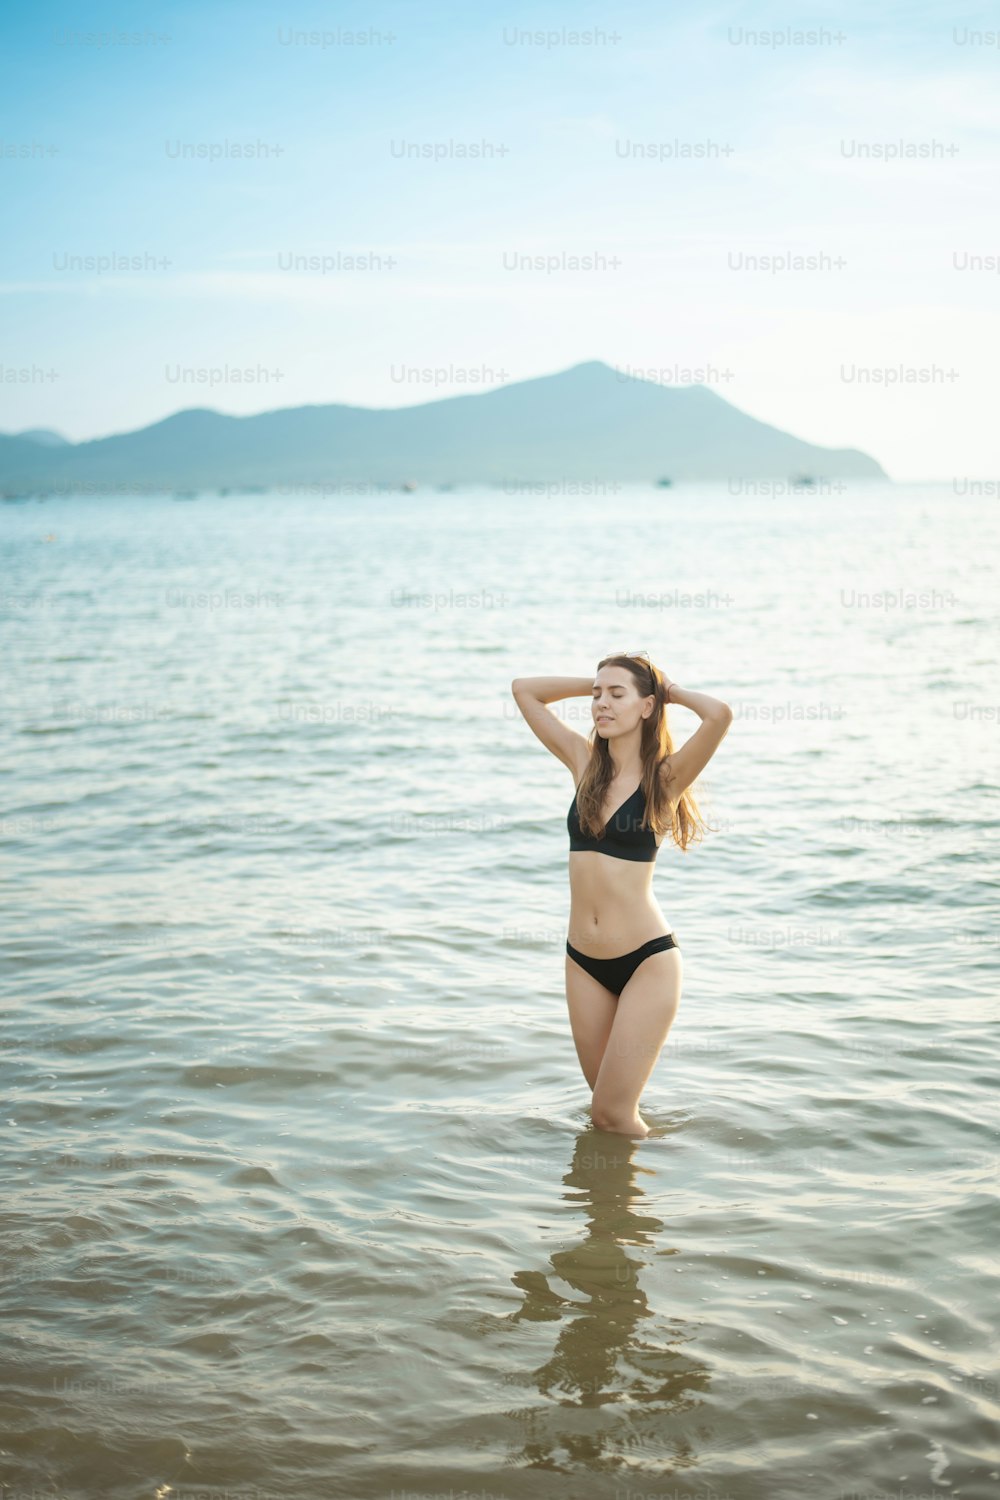 검은 비키니를 입은 아름다운 여자가 해변에서 바닷물을 즐기고 있다